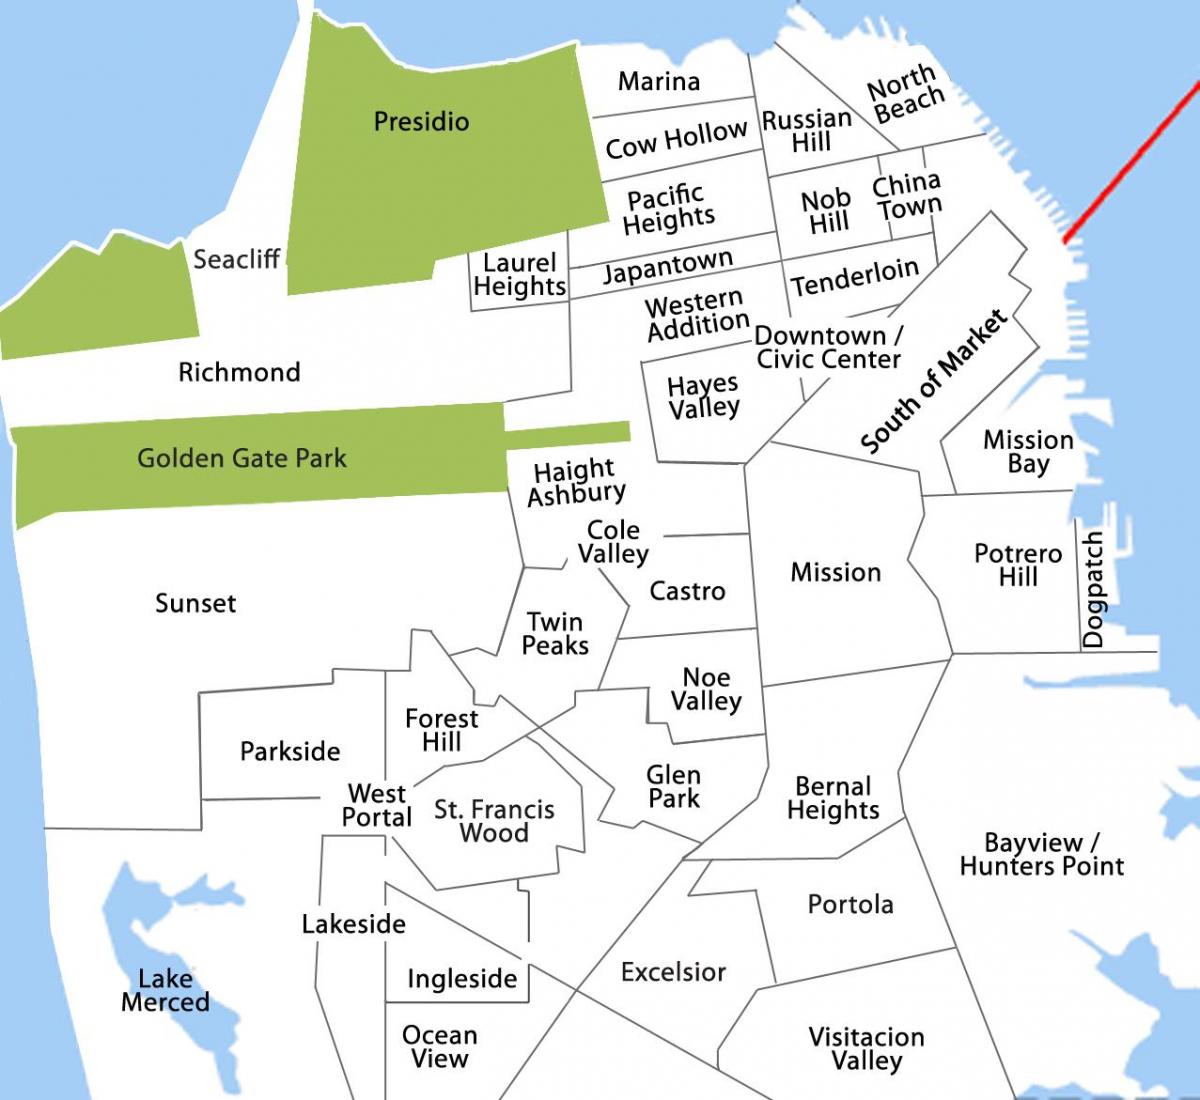 Mapa ng bayview distrito ng San Francisco 